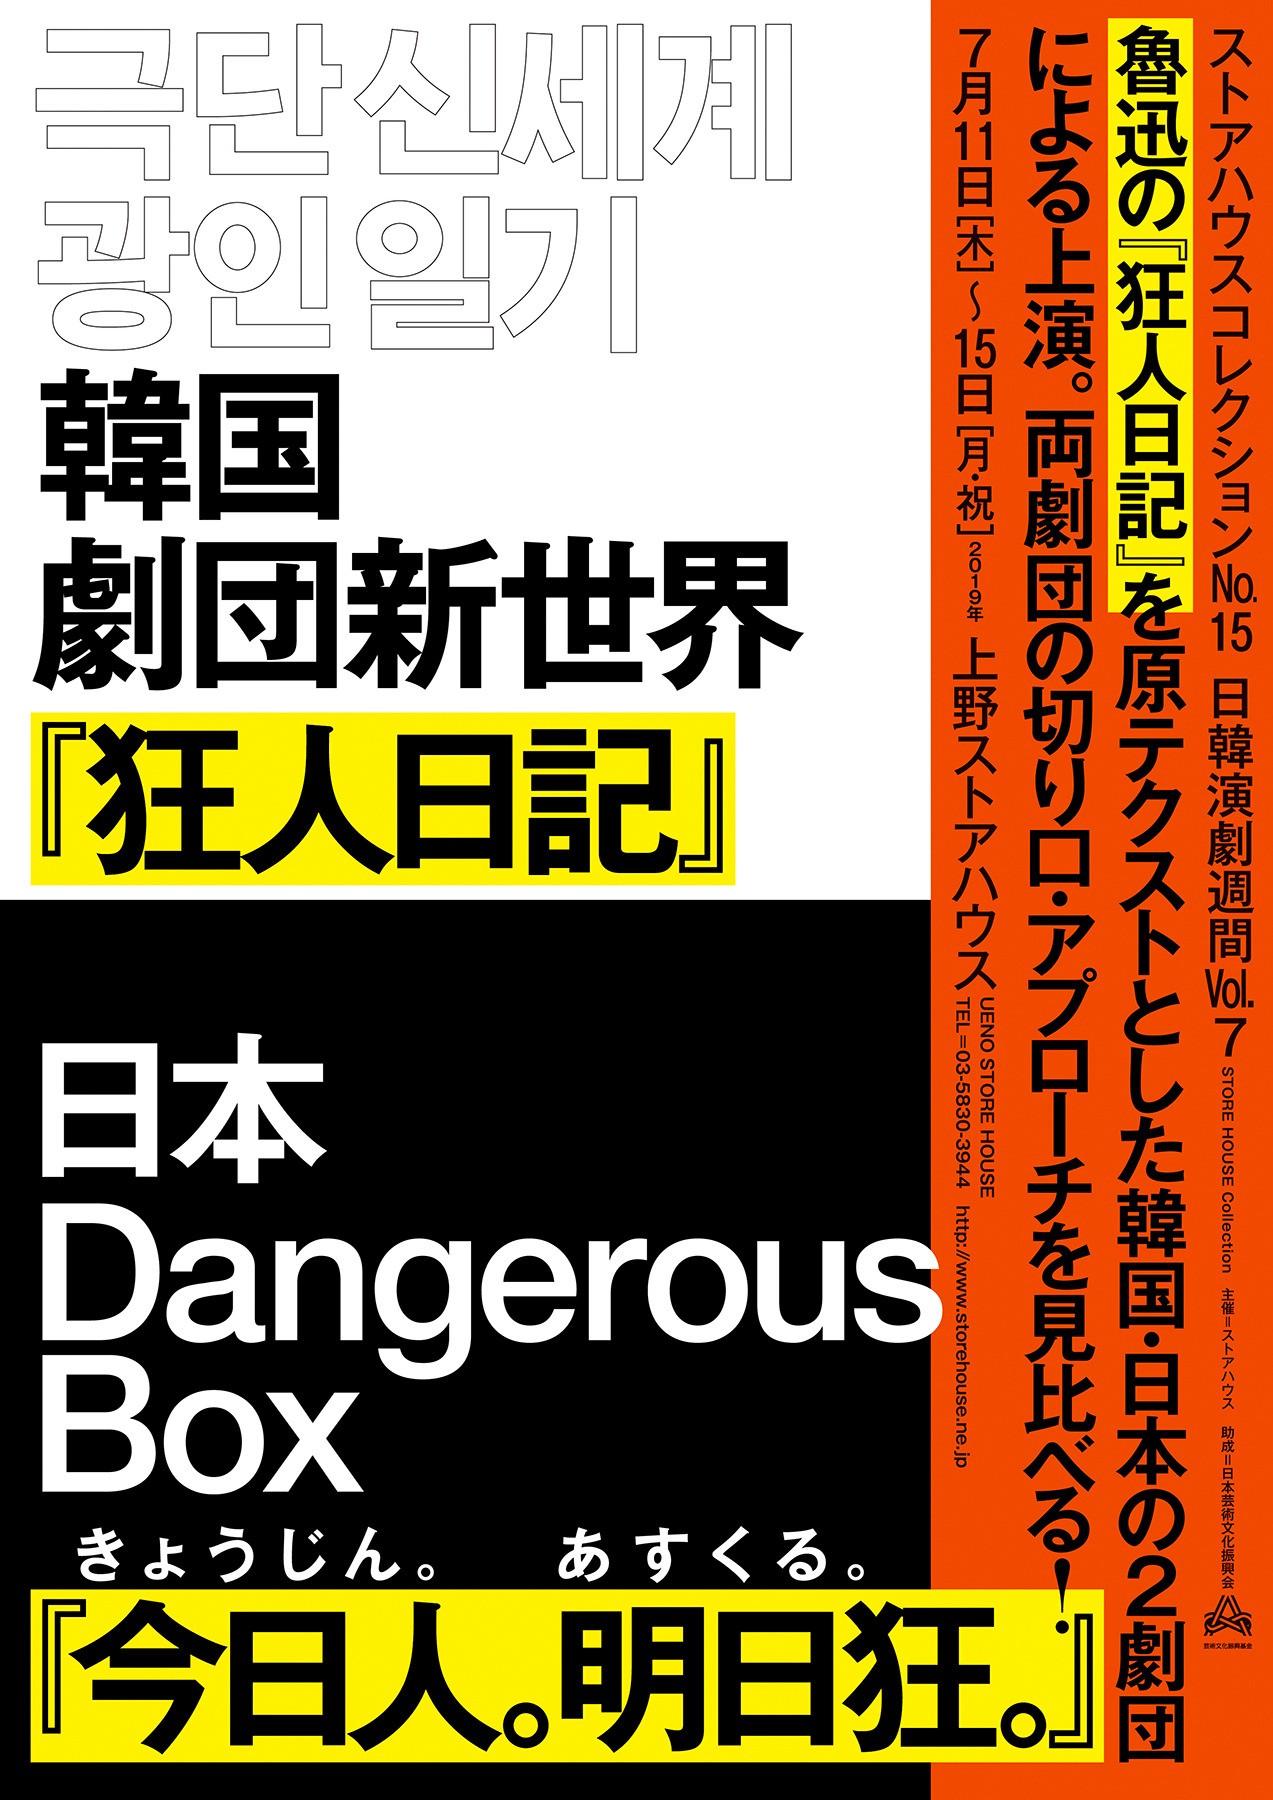 日本设计师村松丈彦文字海报设计